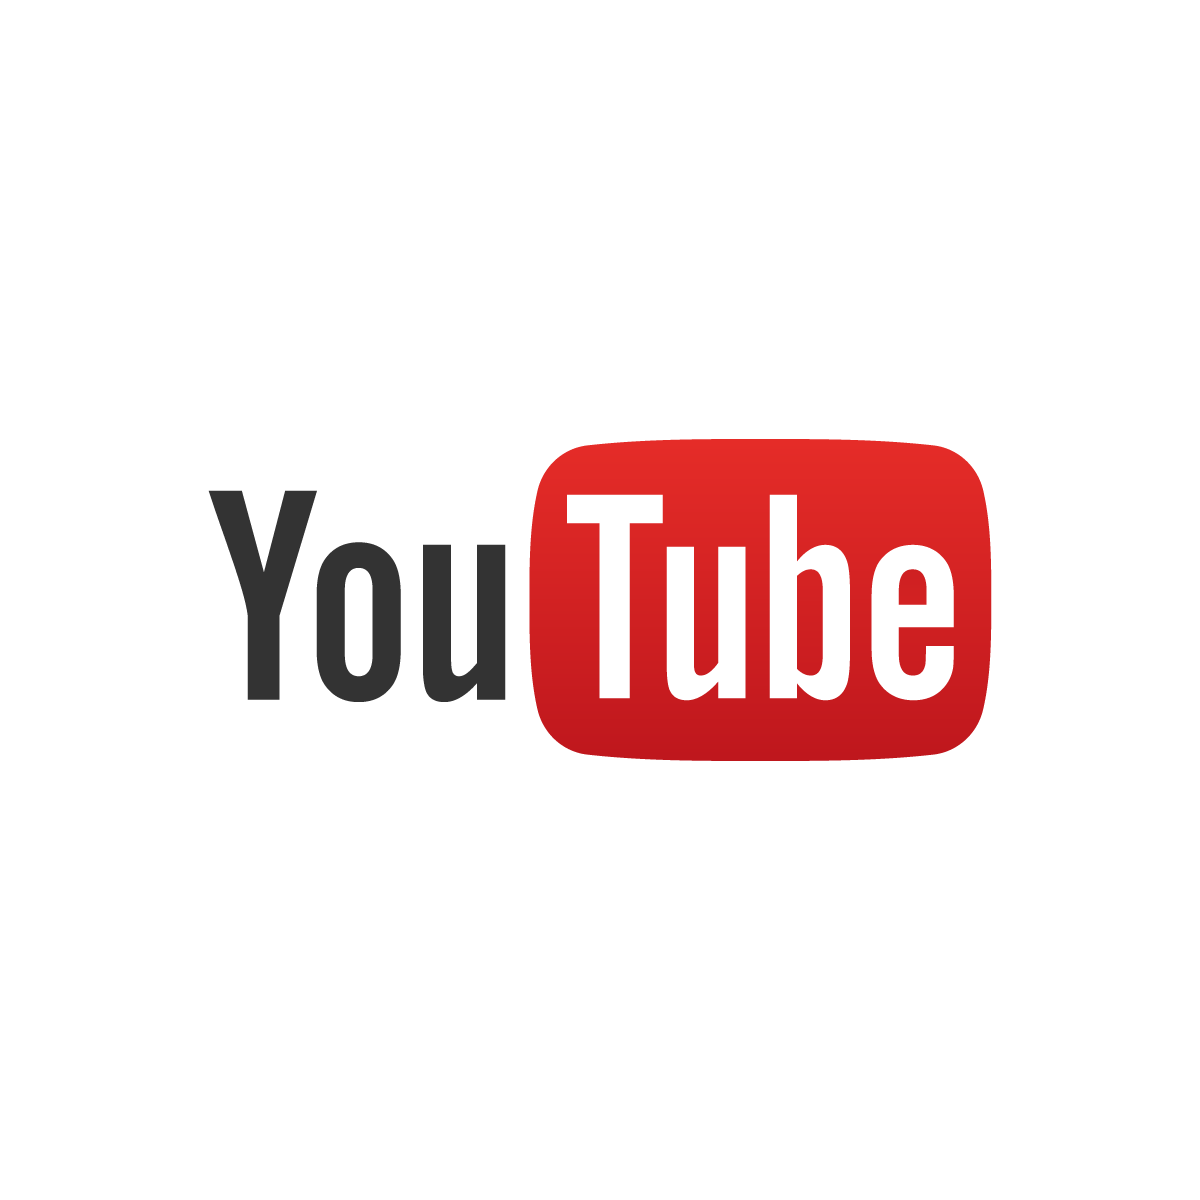 楽天の商品説明文に動画を読み込みたいのですが、Youtubeの動画を利用することは可能でしょうか？